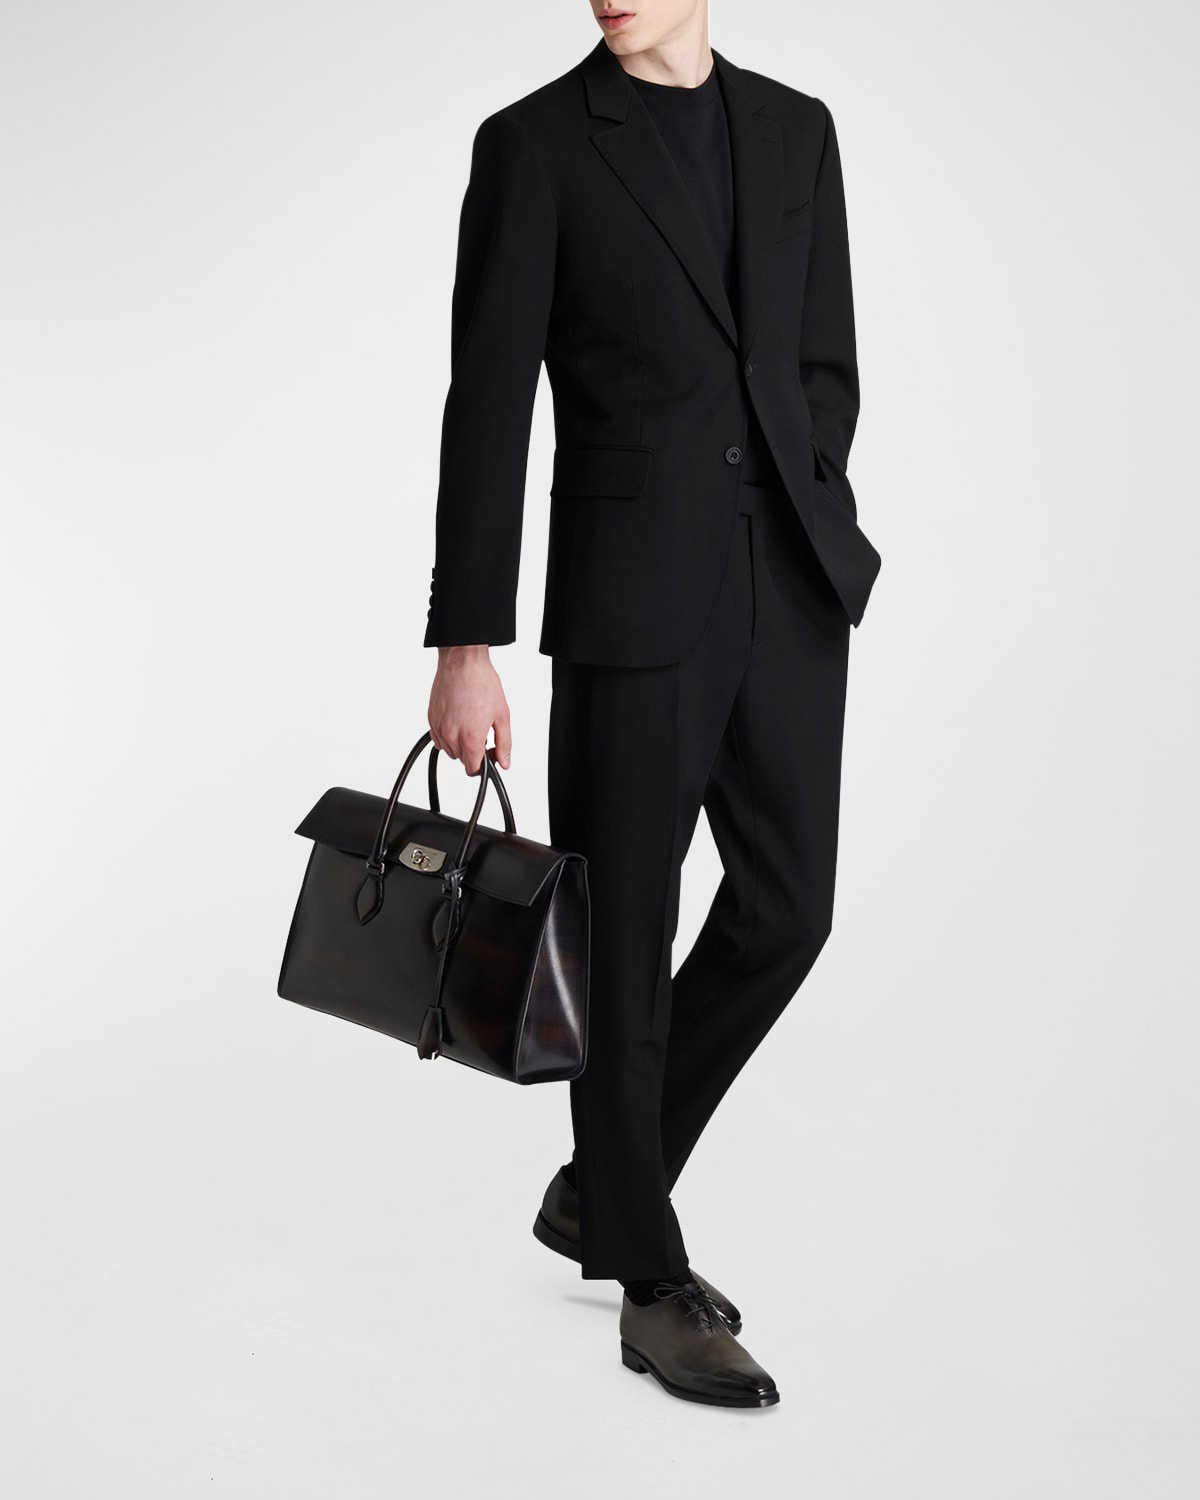 Berluti Men's Solid Wool Suit Jacket In Noir